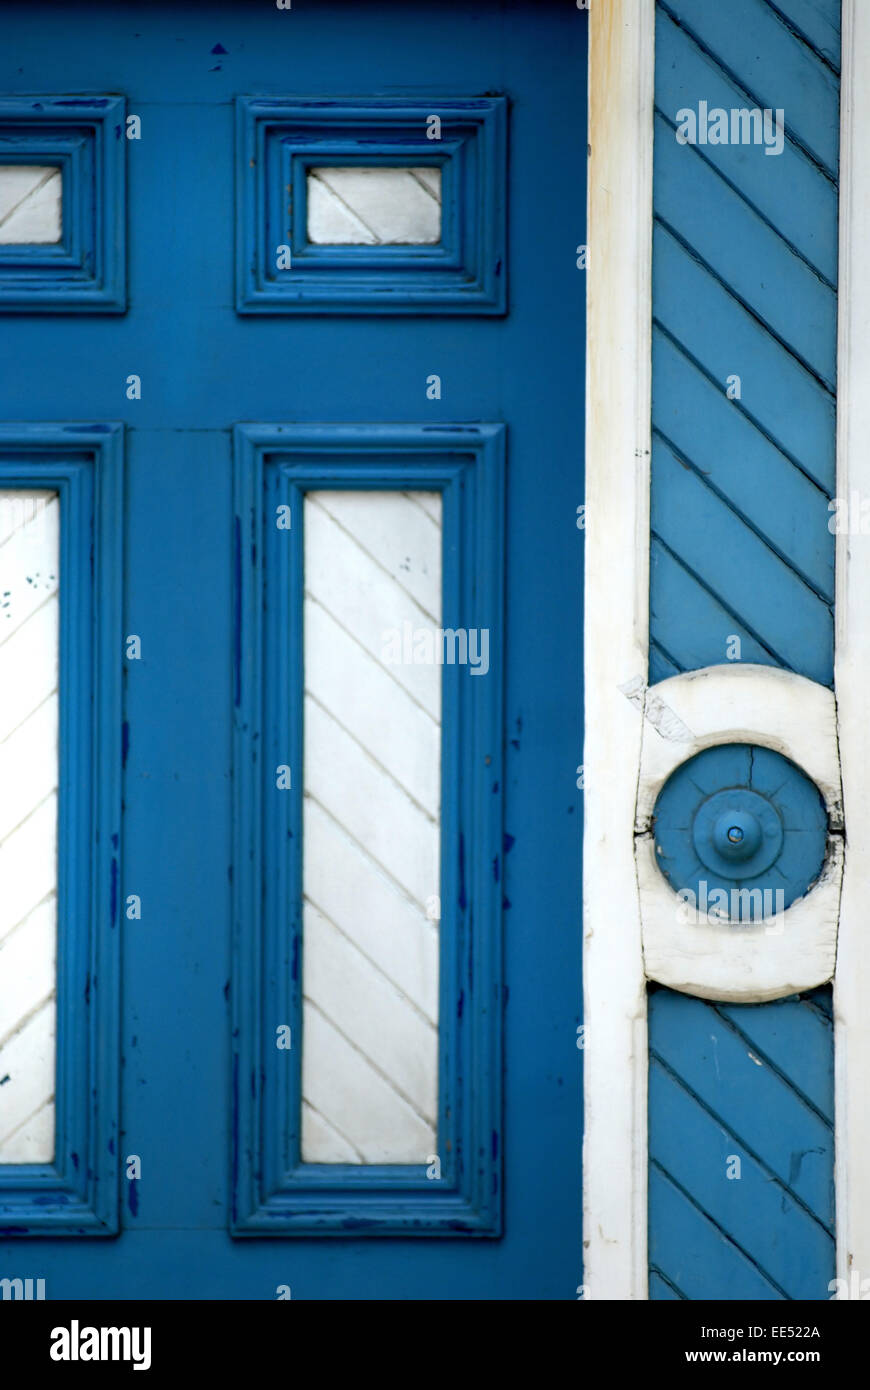 Blue and White paneled doorway, Hexham, Northumberland Stock Photo